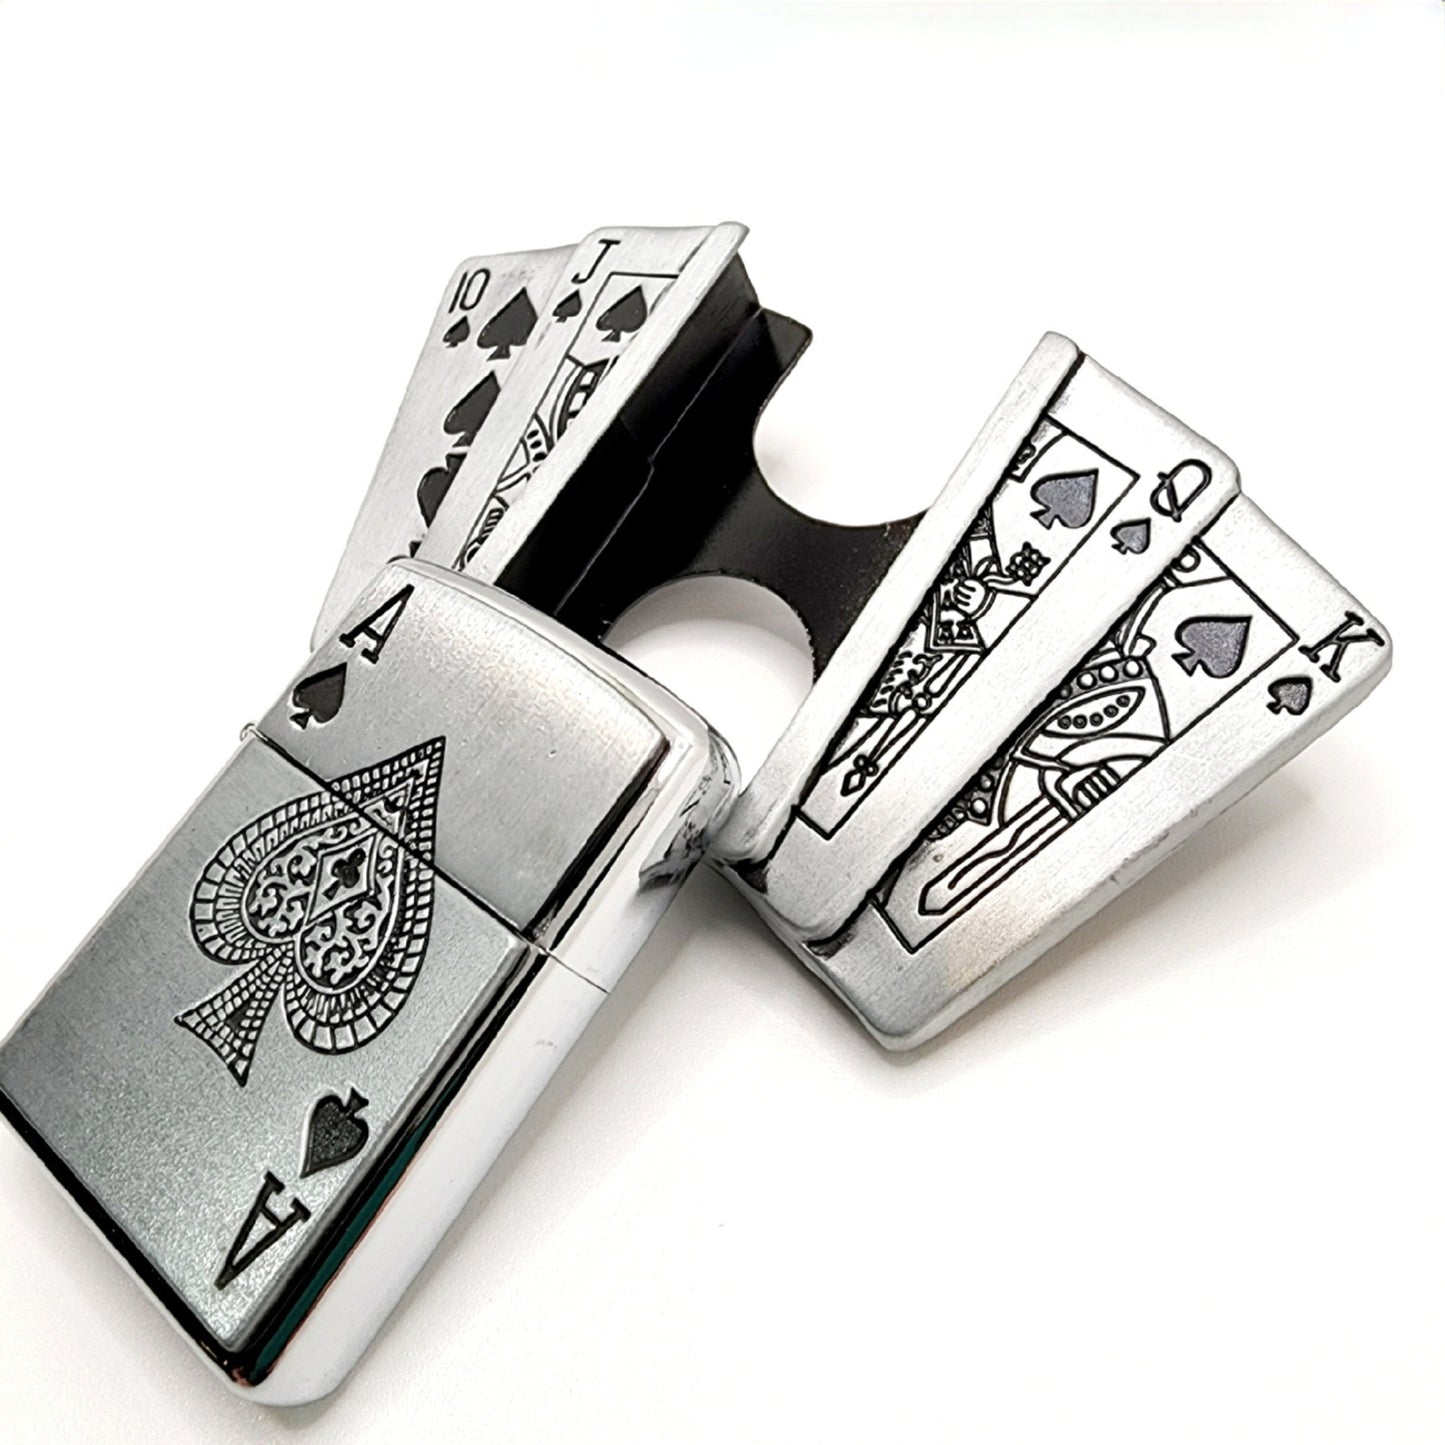 Poker Royal Flush Lighter Belt Buckle with Genuine Leather Belt shop.AxeDr.com belt, Belt Buckle, Buckles with Belt